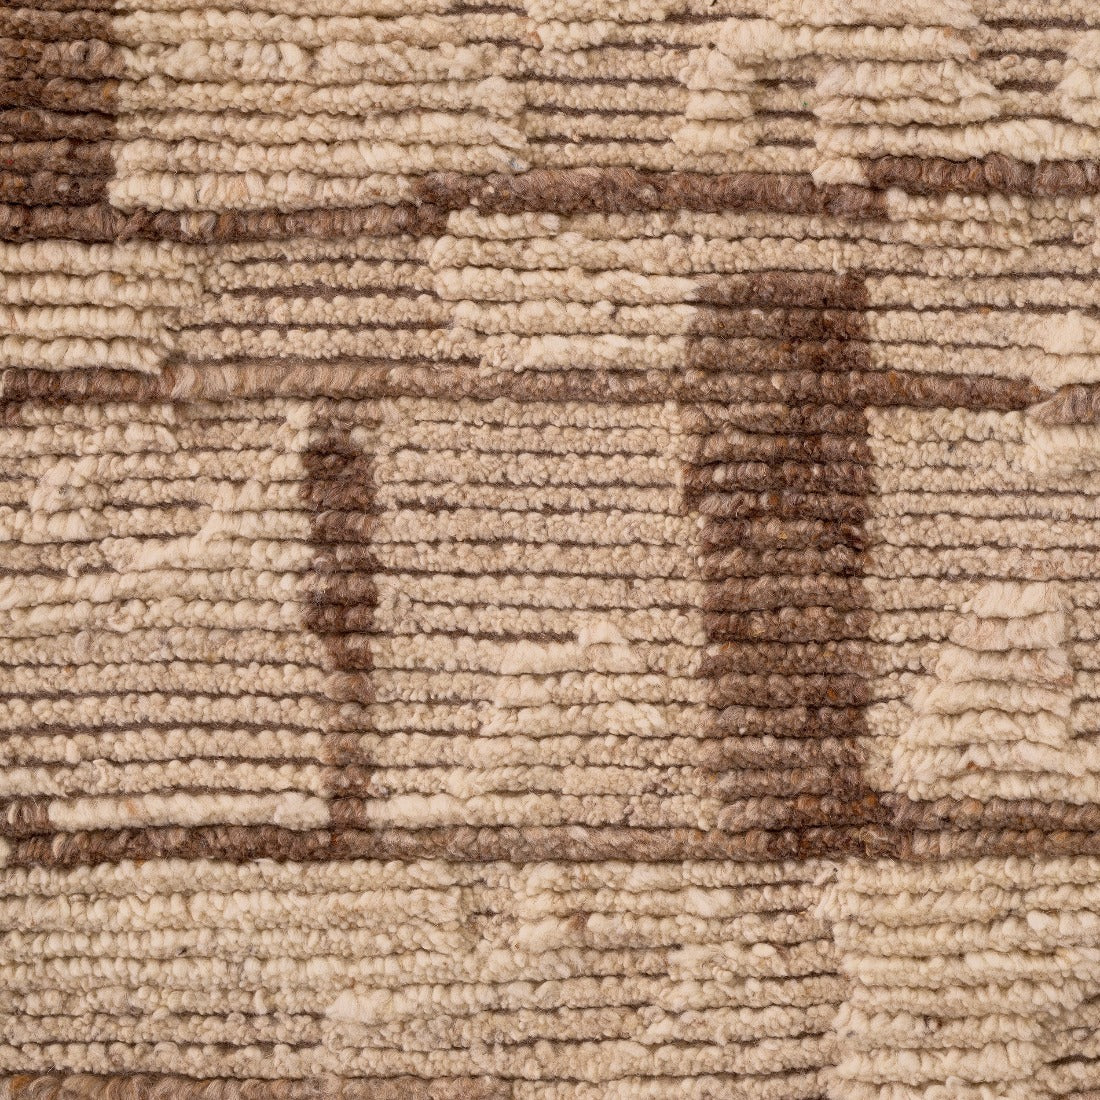 Vloerkleed Eichholtz Limitless carpet ivory brown